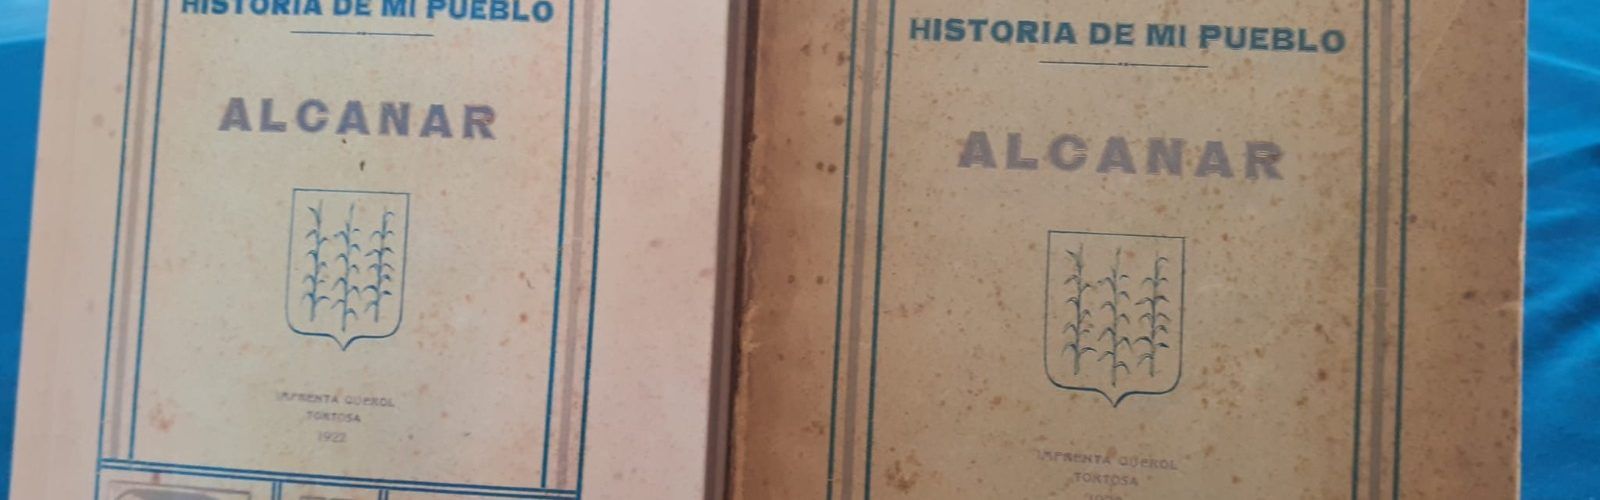 Es presenta a Alcanar la nova edició facsímil del llibre ‘Historia de mi pueblo’